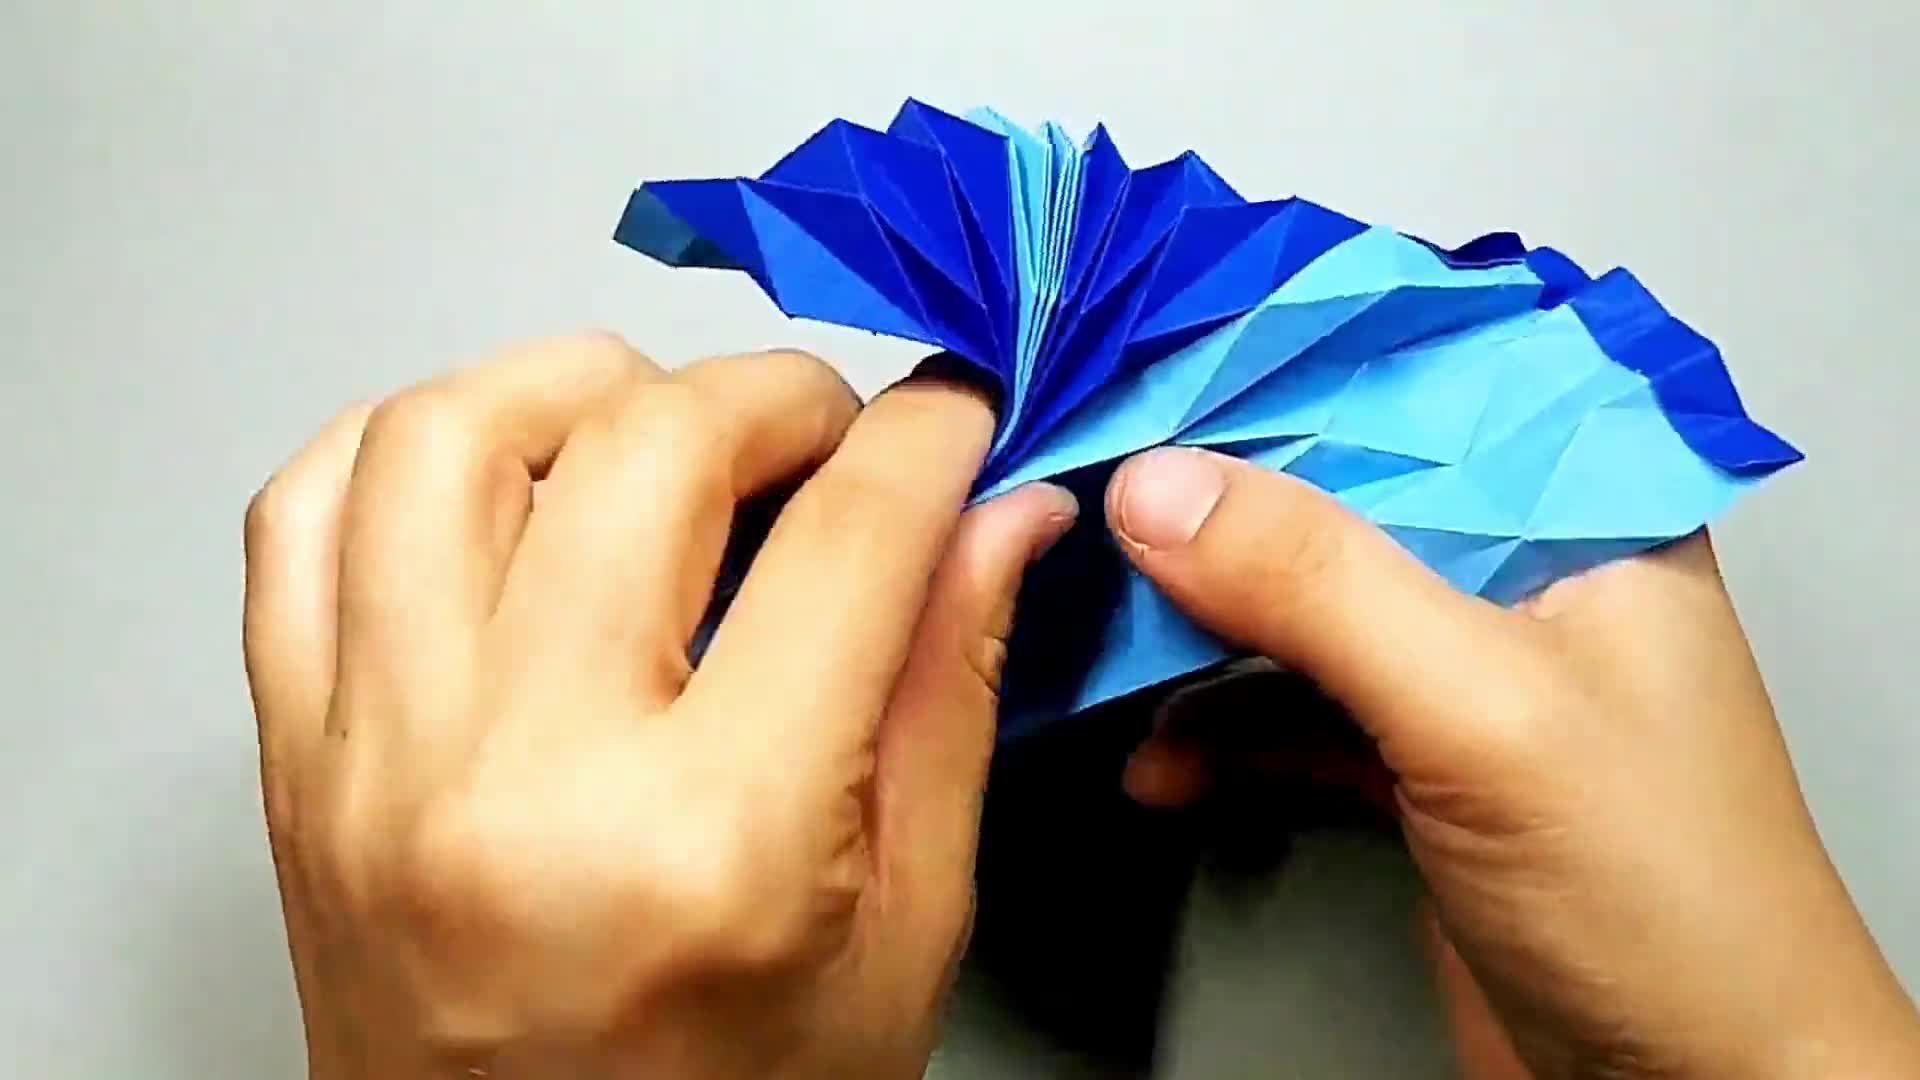 立体热气球折纸视频教程,教你用纸制作立体热气球,很好玩!